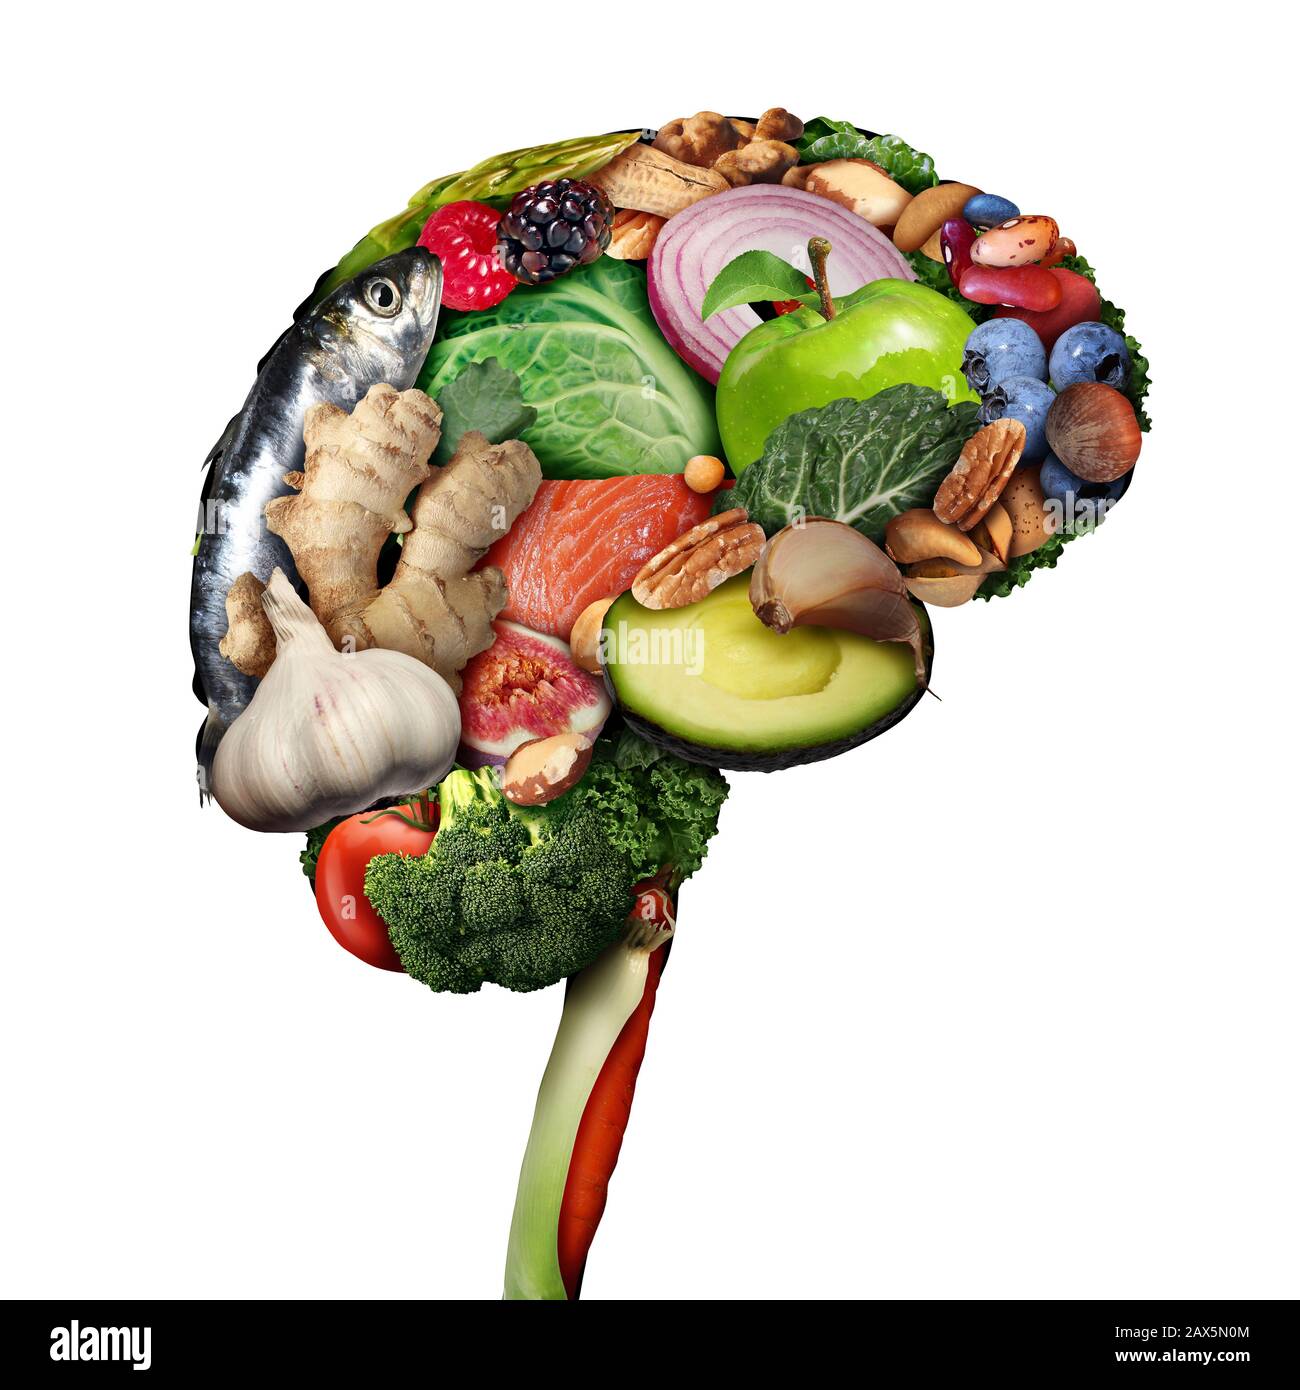 Gesunde Gehirnnahrung zur Förderung des Gehirnkraft-Ernährungskonzepts als eine Gruppe nahrhafter Nüsse Fischgemüse und Beeren, die reich an Omega-3-Fettsäuren sind. Stockfoto